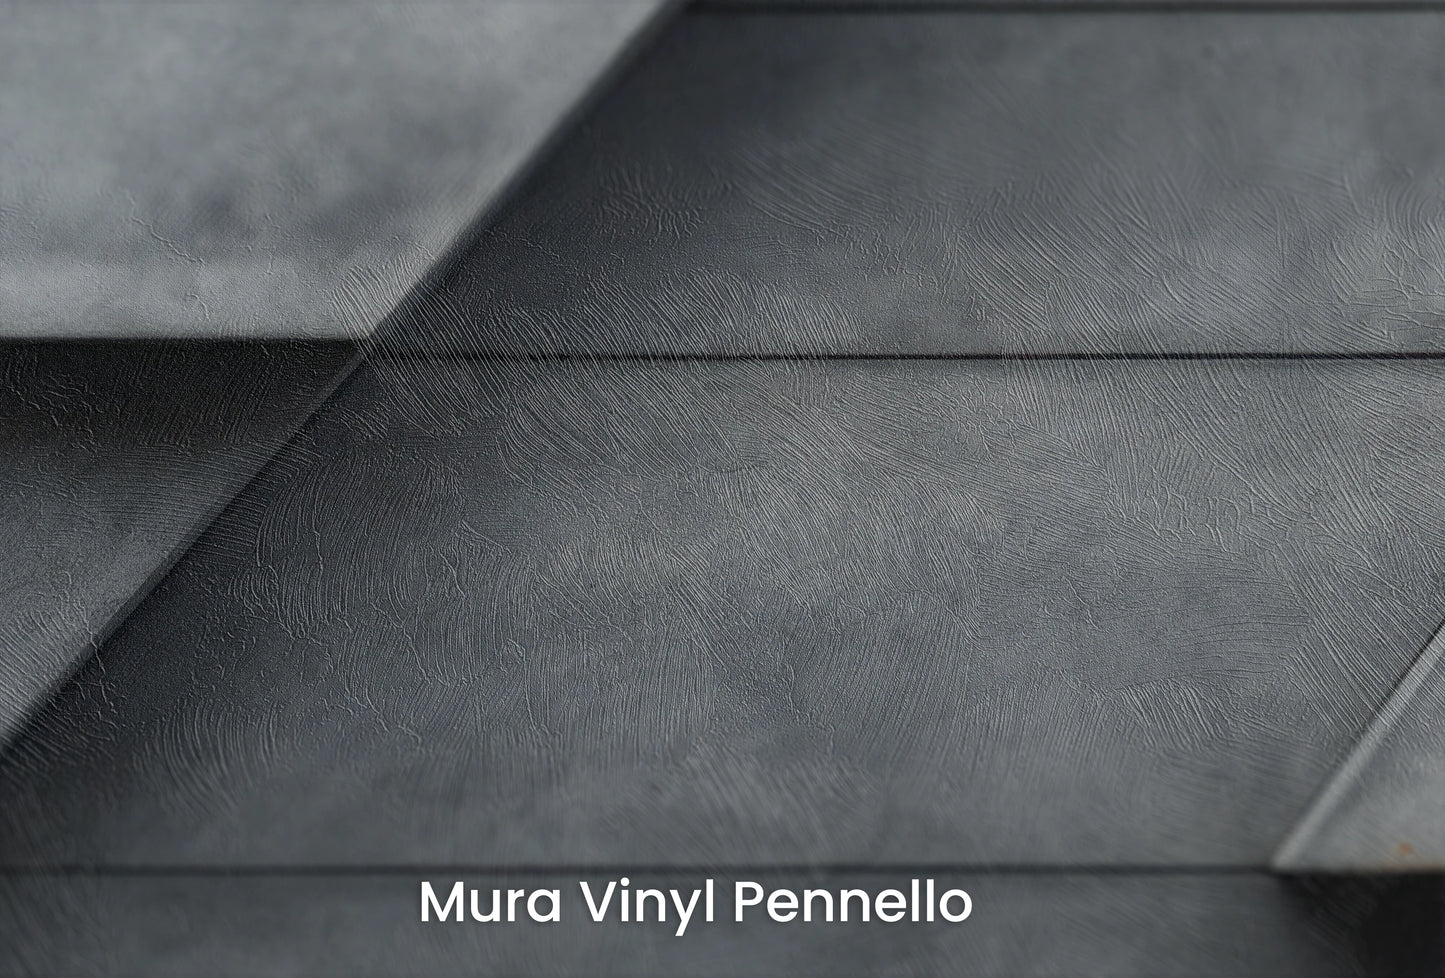 Zbliżenie na artystyczną fototapetę o nazwie Modern Layers na podłożu Mura Vinyl Pennello - faktura pociągnięć pędzla malarskiego.